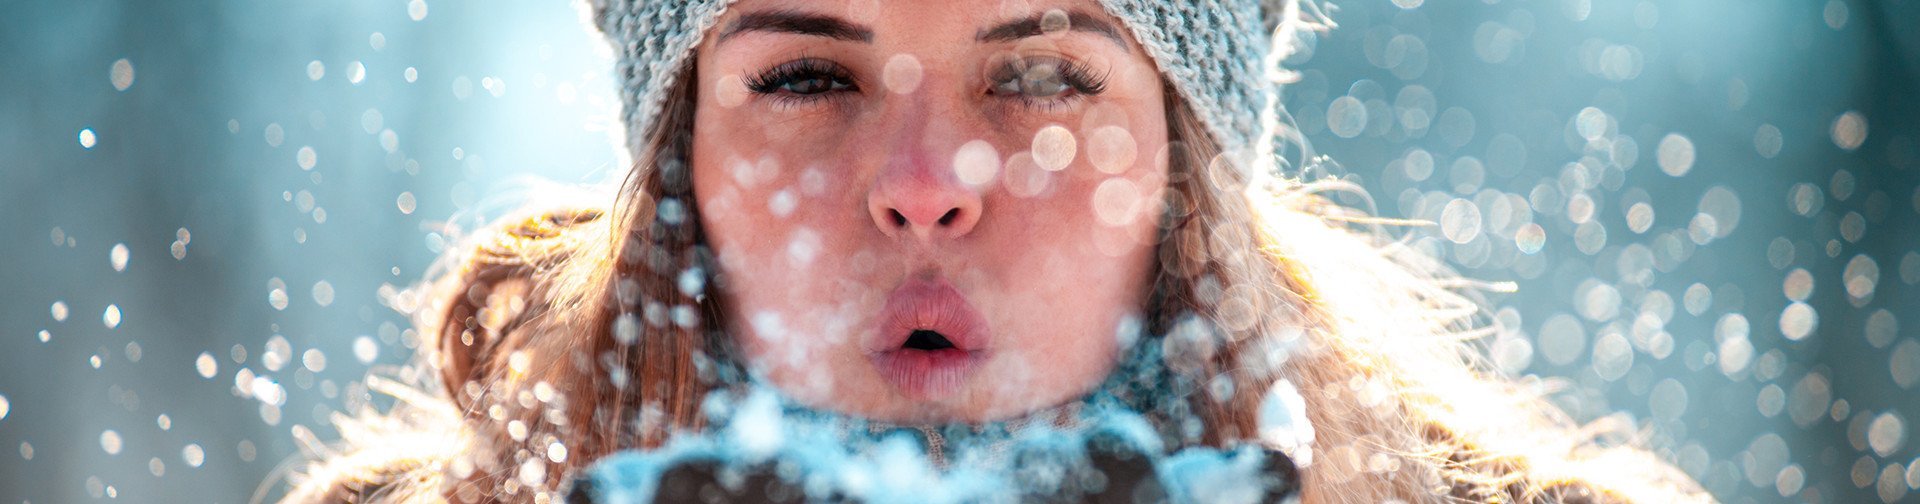 Frau mit Mütze pustet Schnee in die Kamera